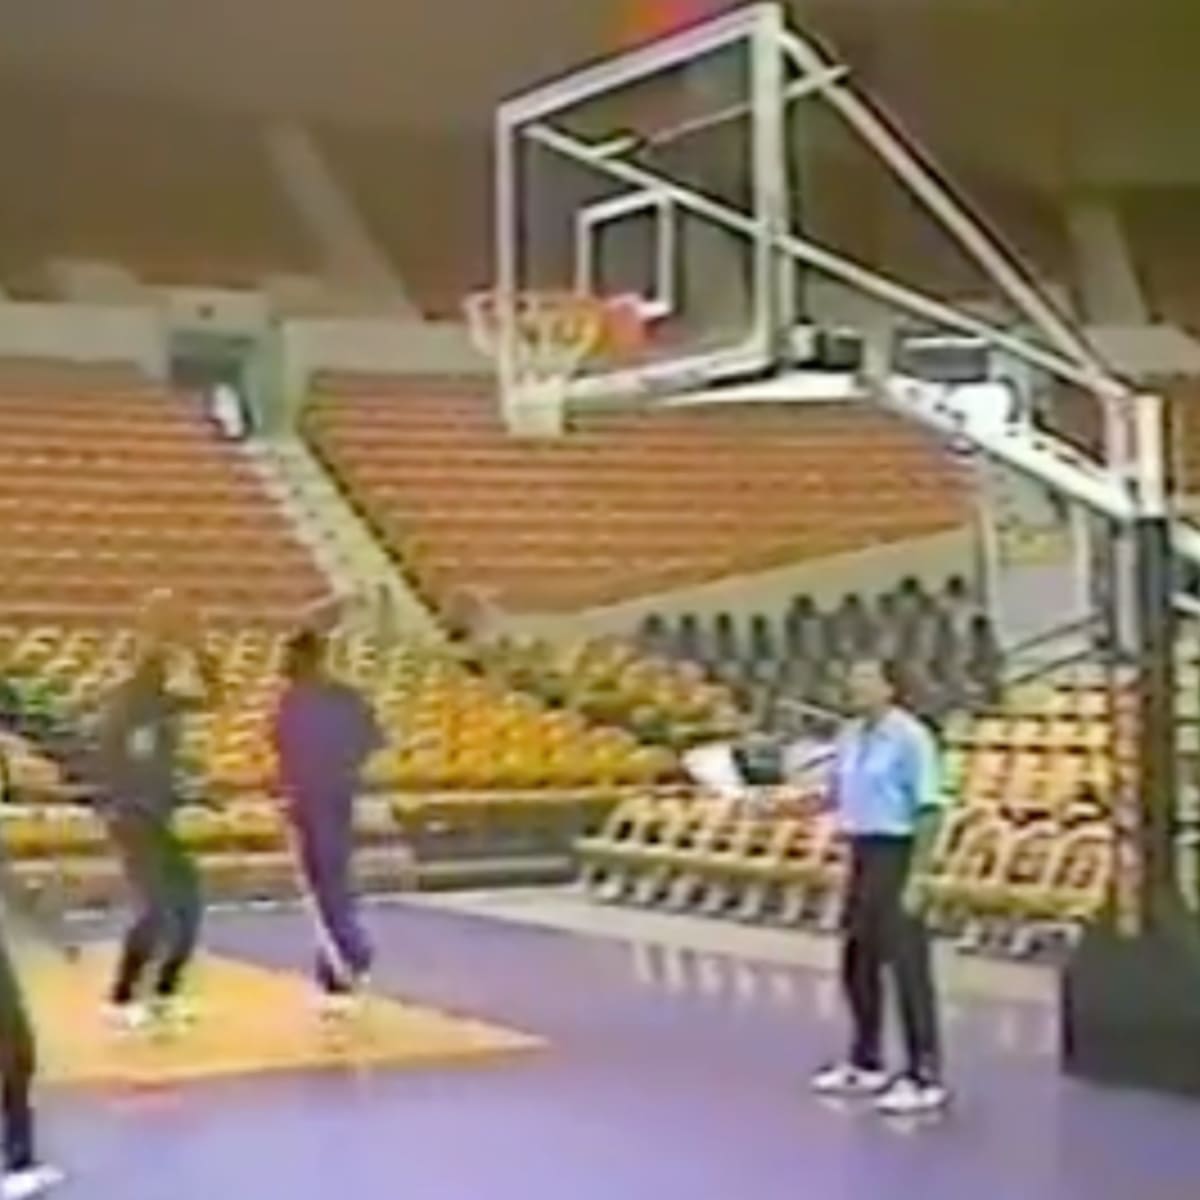 Dr. J killing the Lakers: 1980 vs 1983 